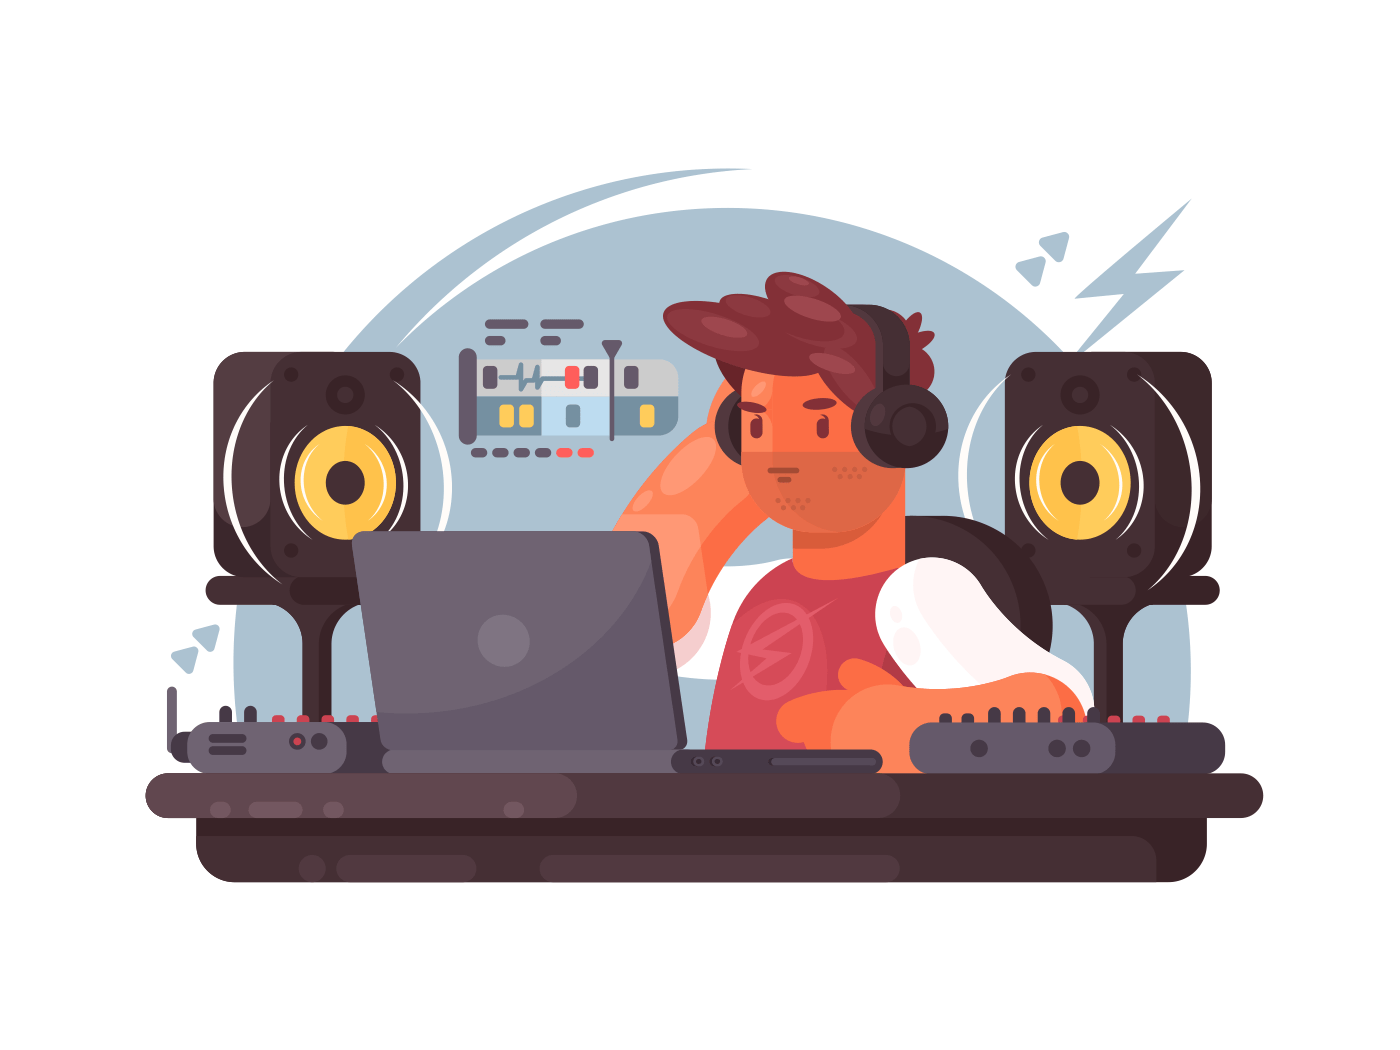 Sound designer on workplace illustration